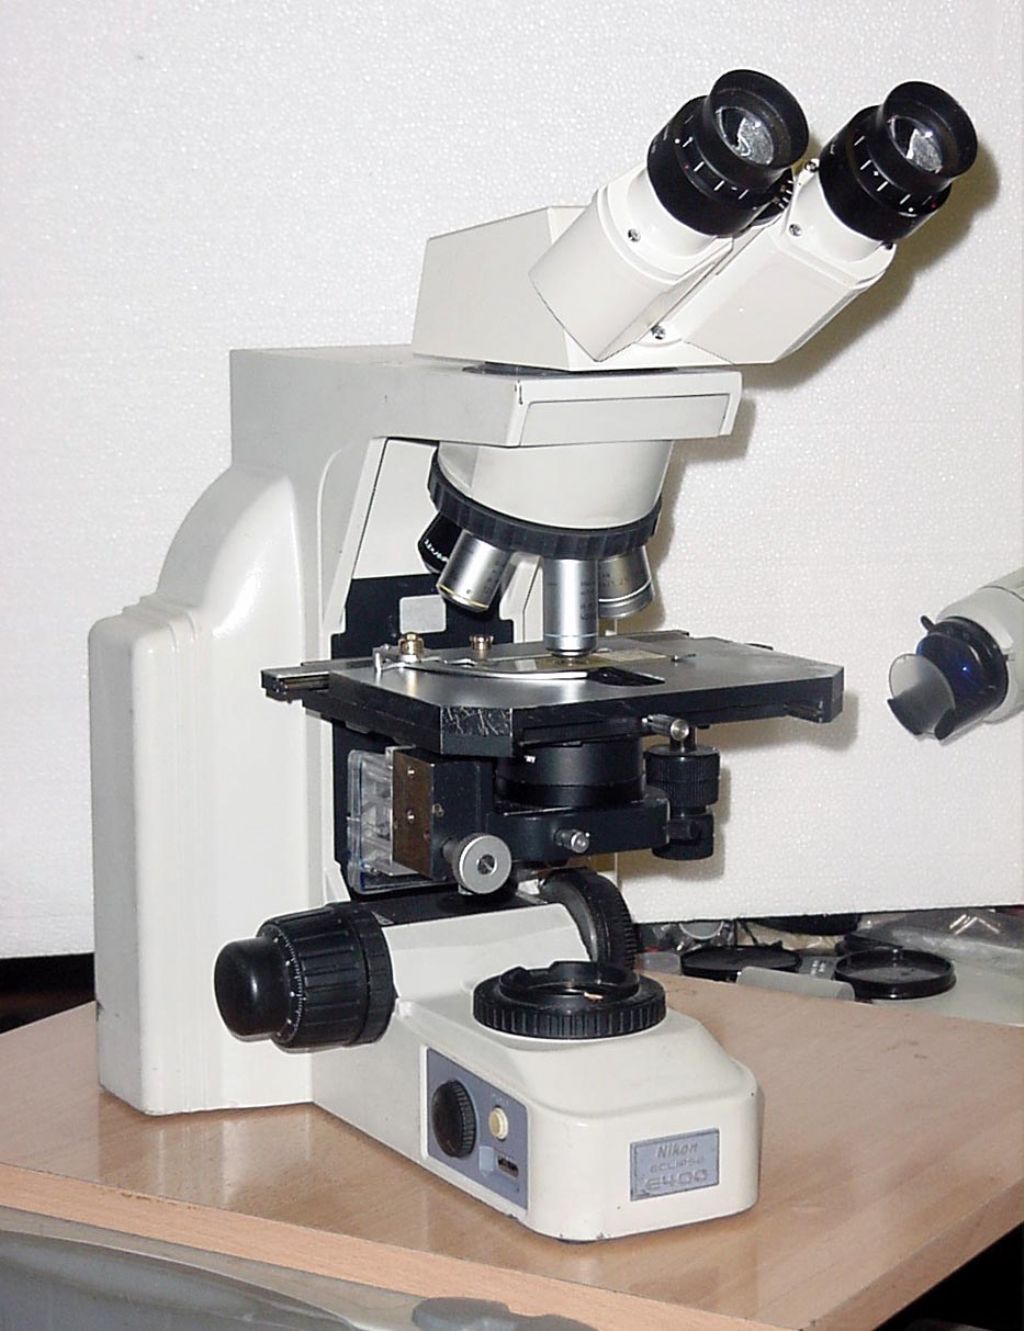 Utilizzare gli obiettivi ad infinito sui vecchi microscopi.